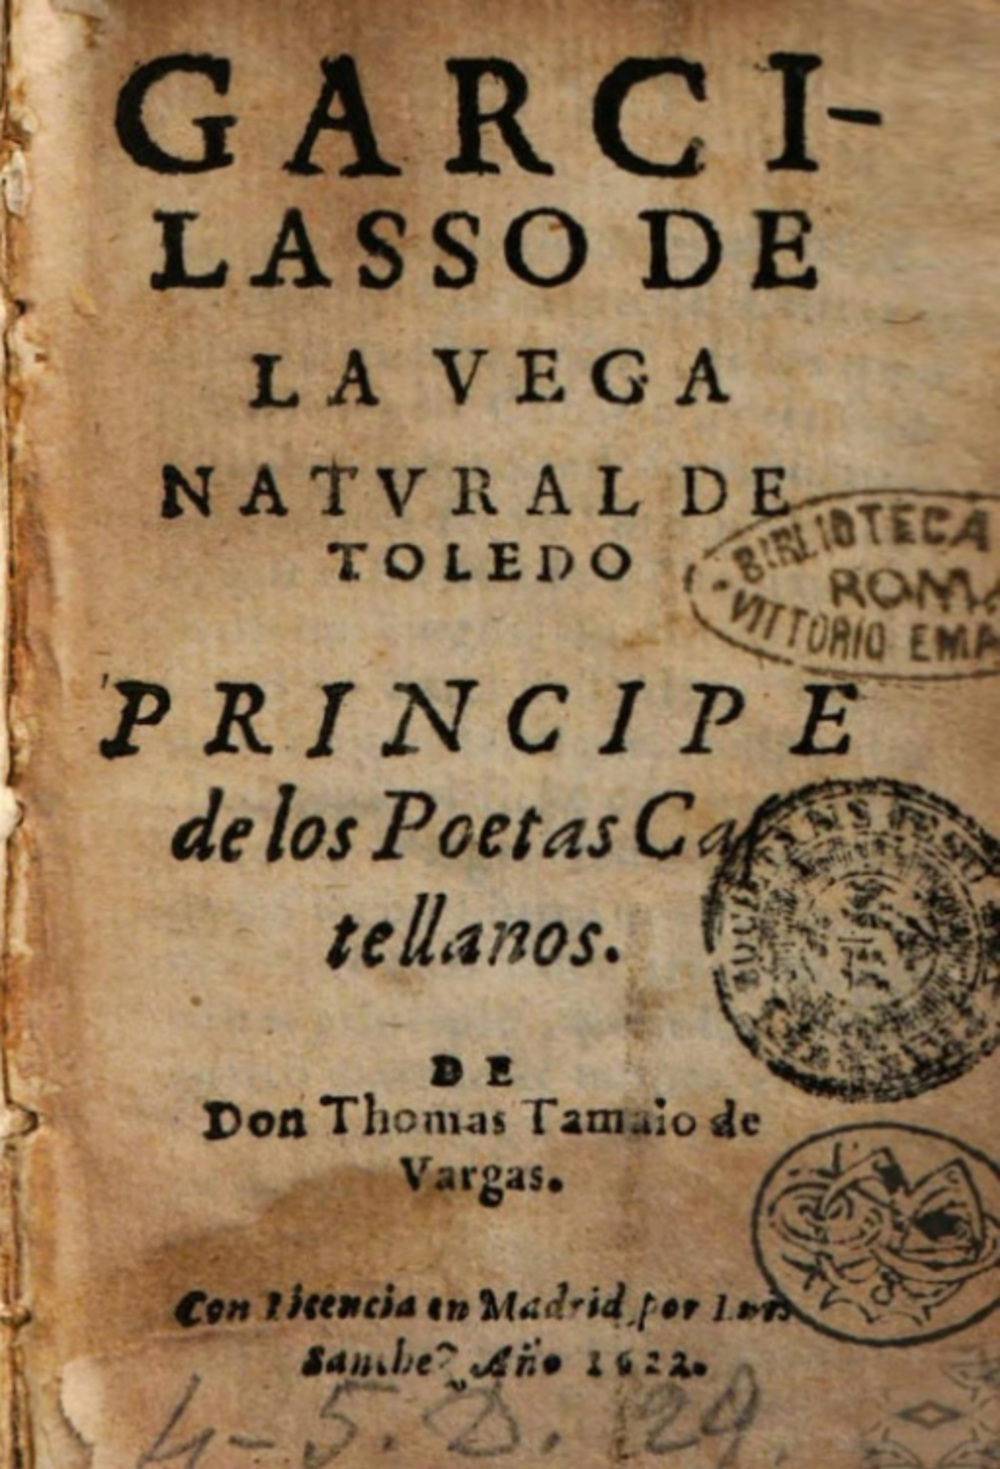 Portada de la obra Garcilasso de la Vega, natural de Toledo, Principe de los Poetas Castellanos, escrita por Tamayo de Vargas en 1622.